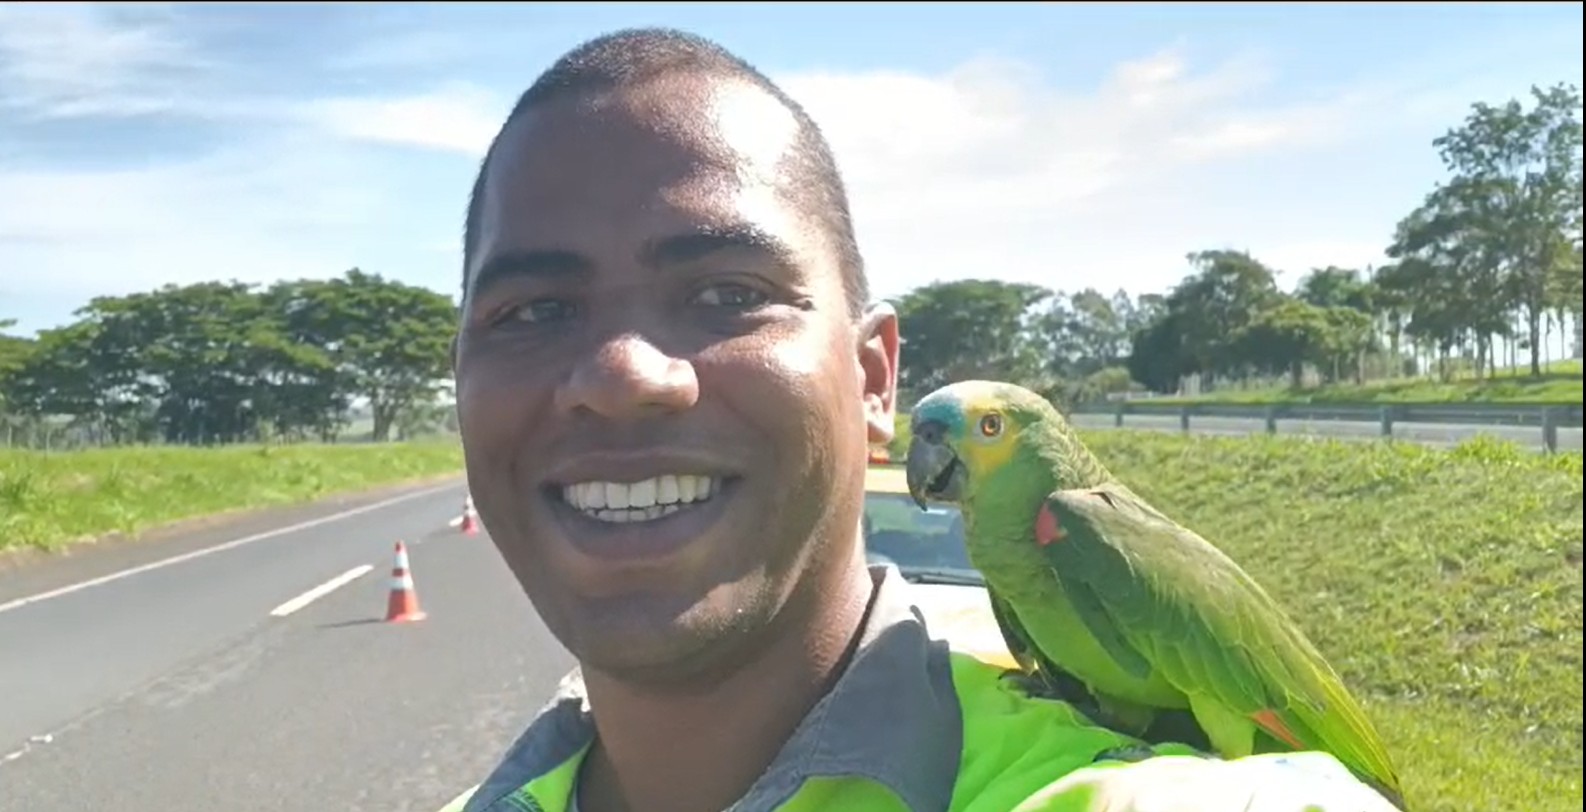 Funcionário de concessionária é surpreendido com papagaio no ombro durante trabalho em rodovia: 'Ajudando a sinalizar'